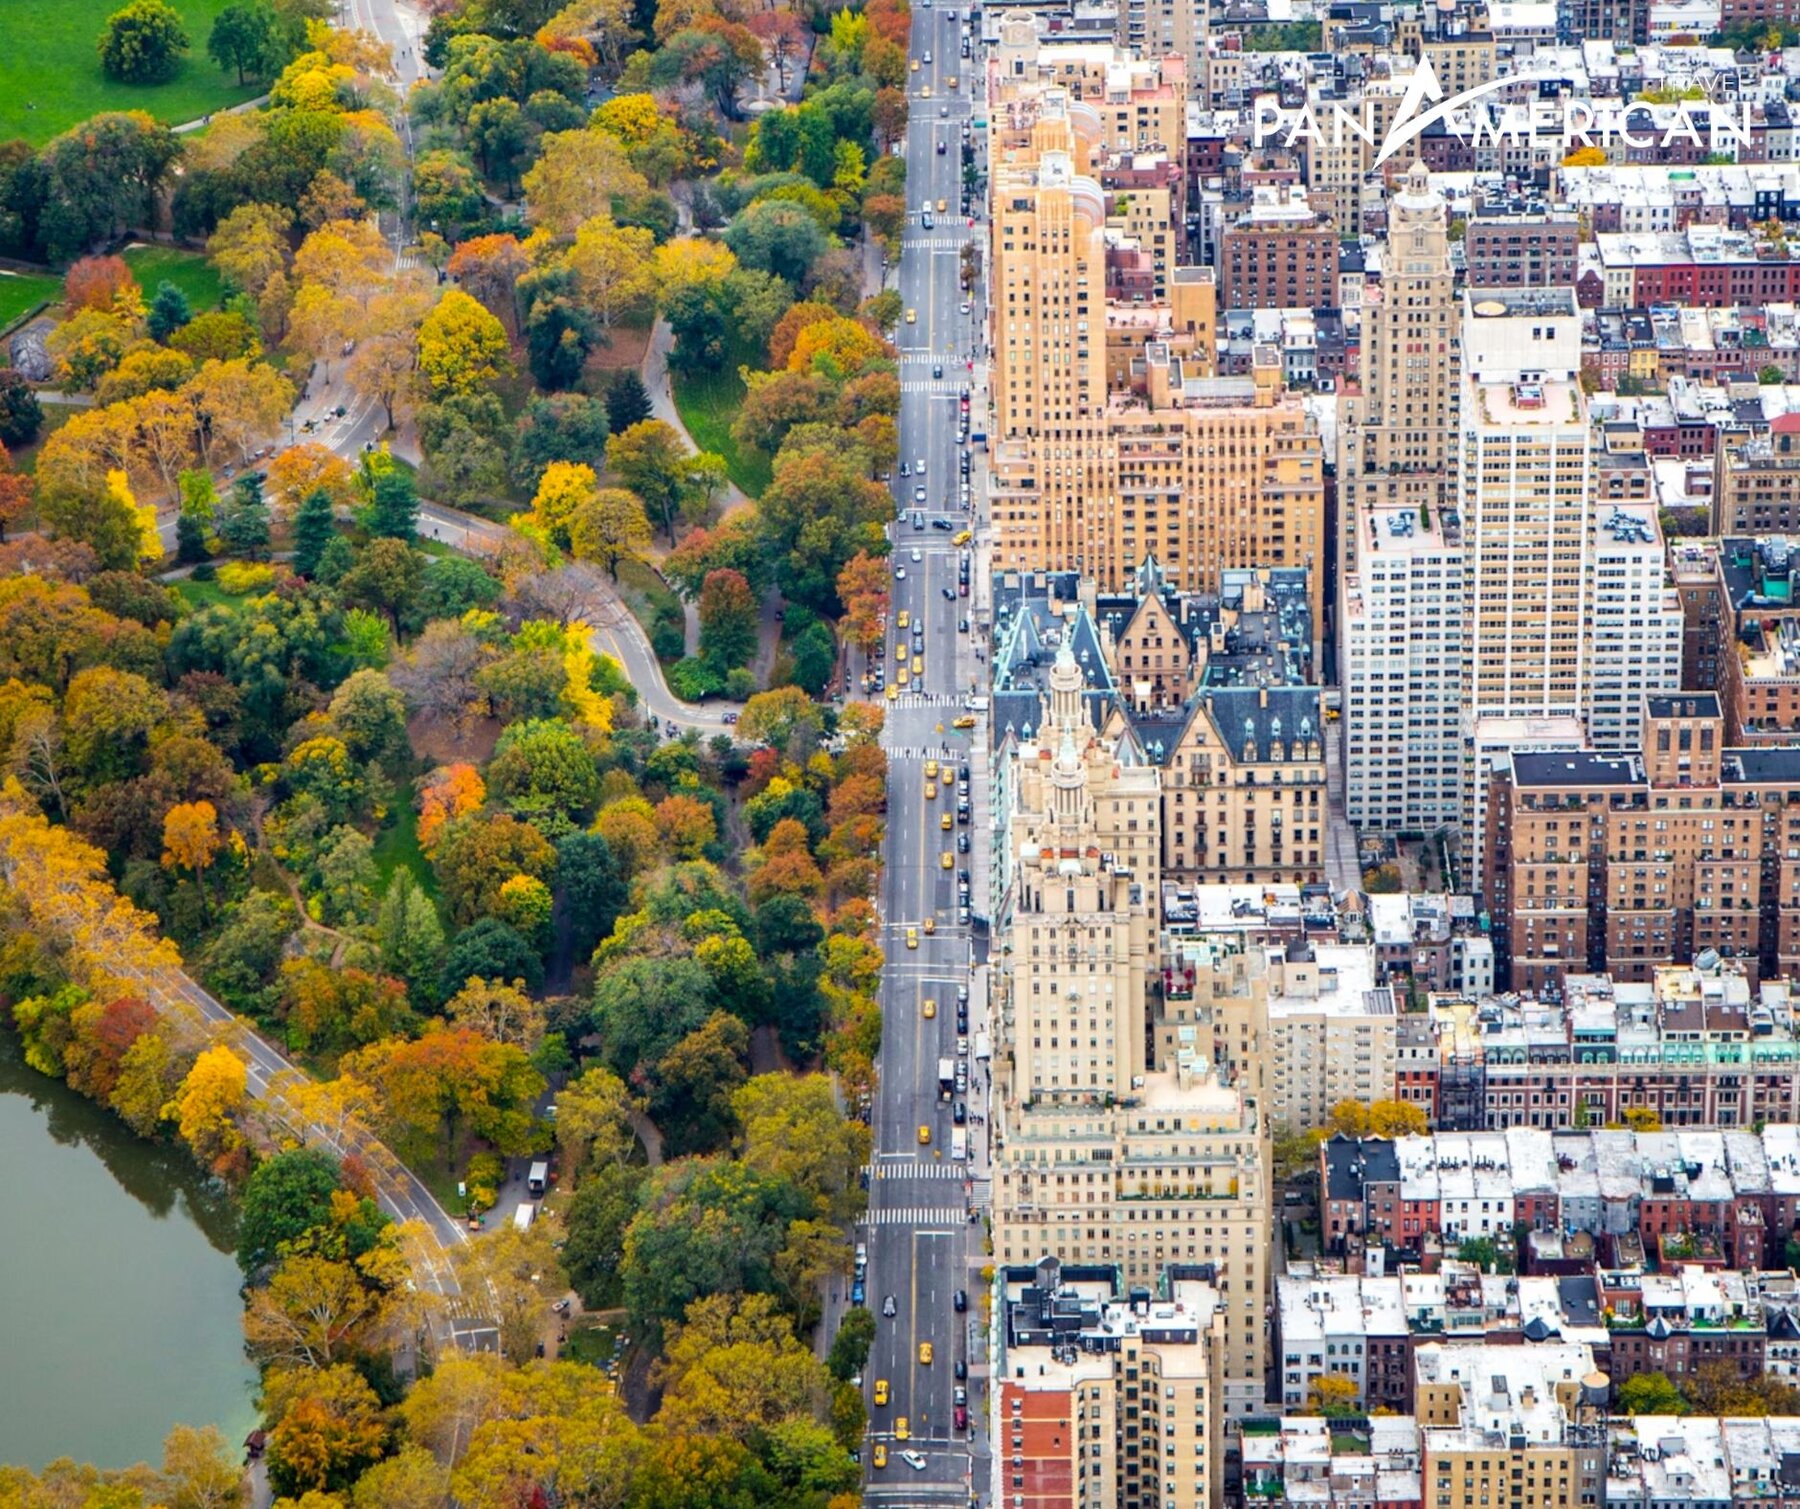 Công viên Central Park ở giữa trung tâm tạo thành không gian xanh đối lập với sự hiện đại, sôi động của thành phố